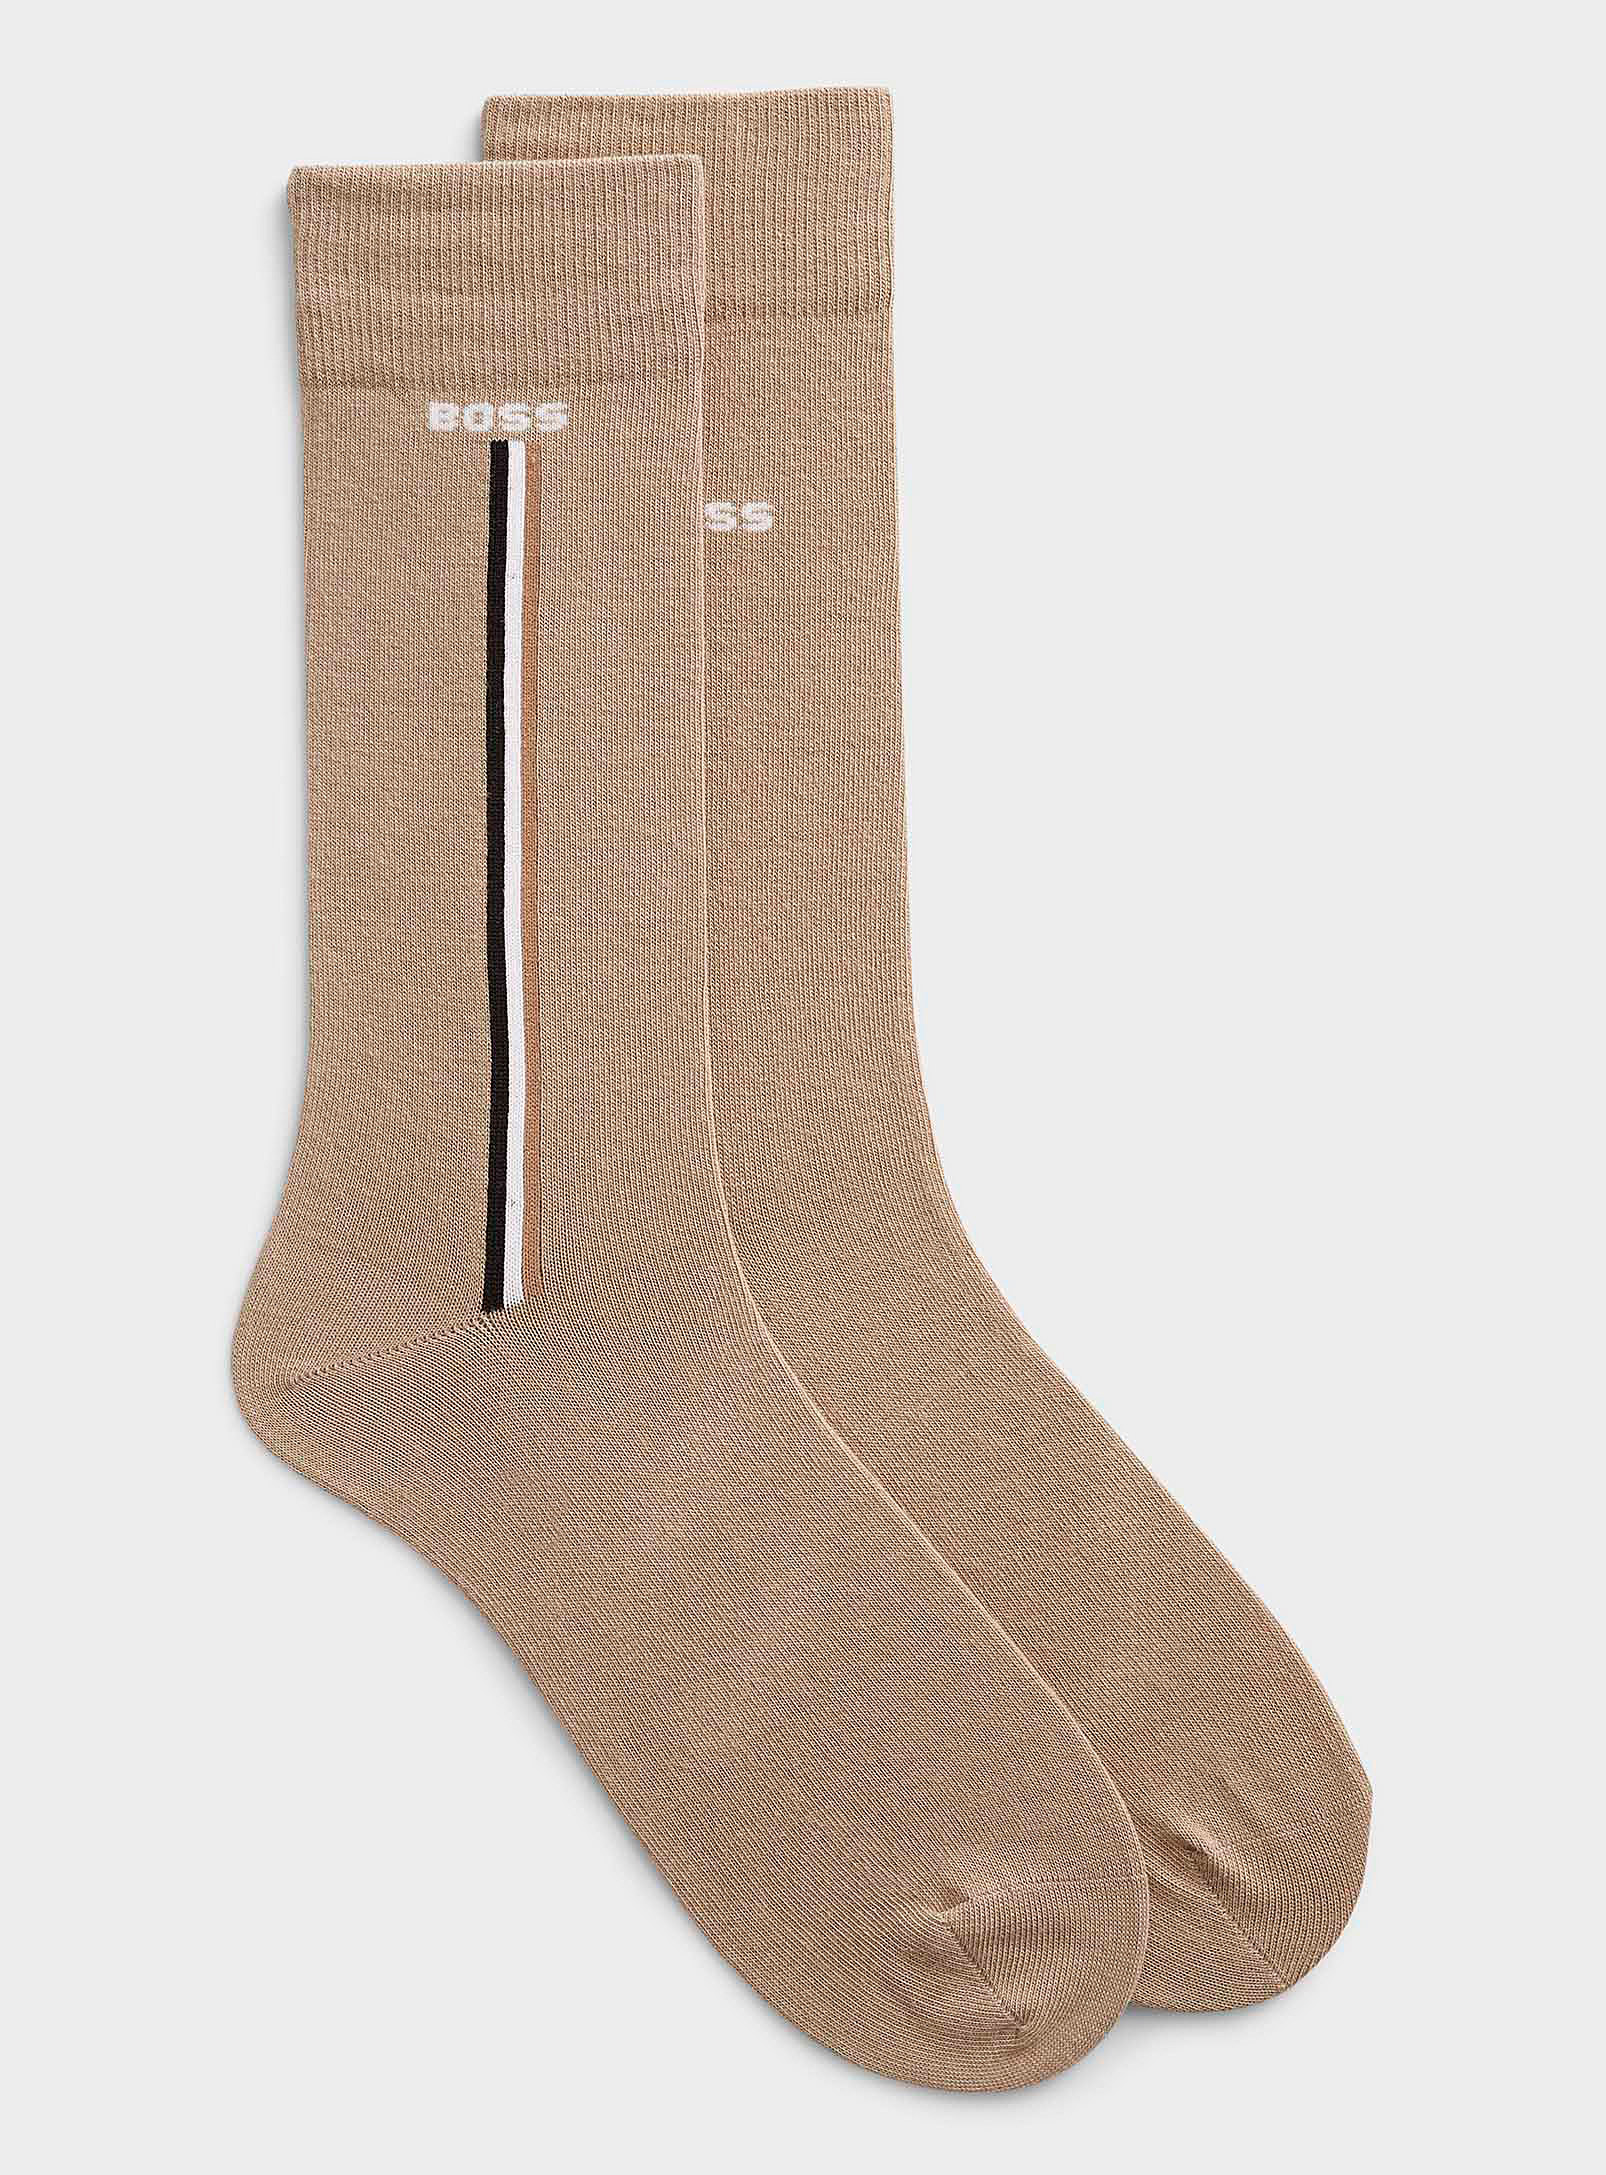 Hugo Boss Iconic Stripe Dress Socks 2-pack In Neutral